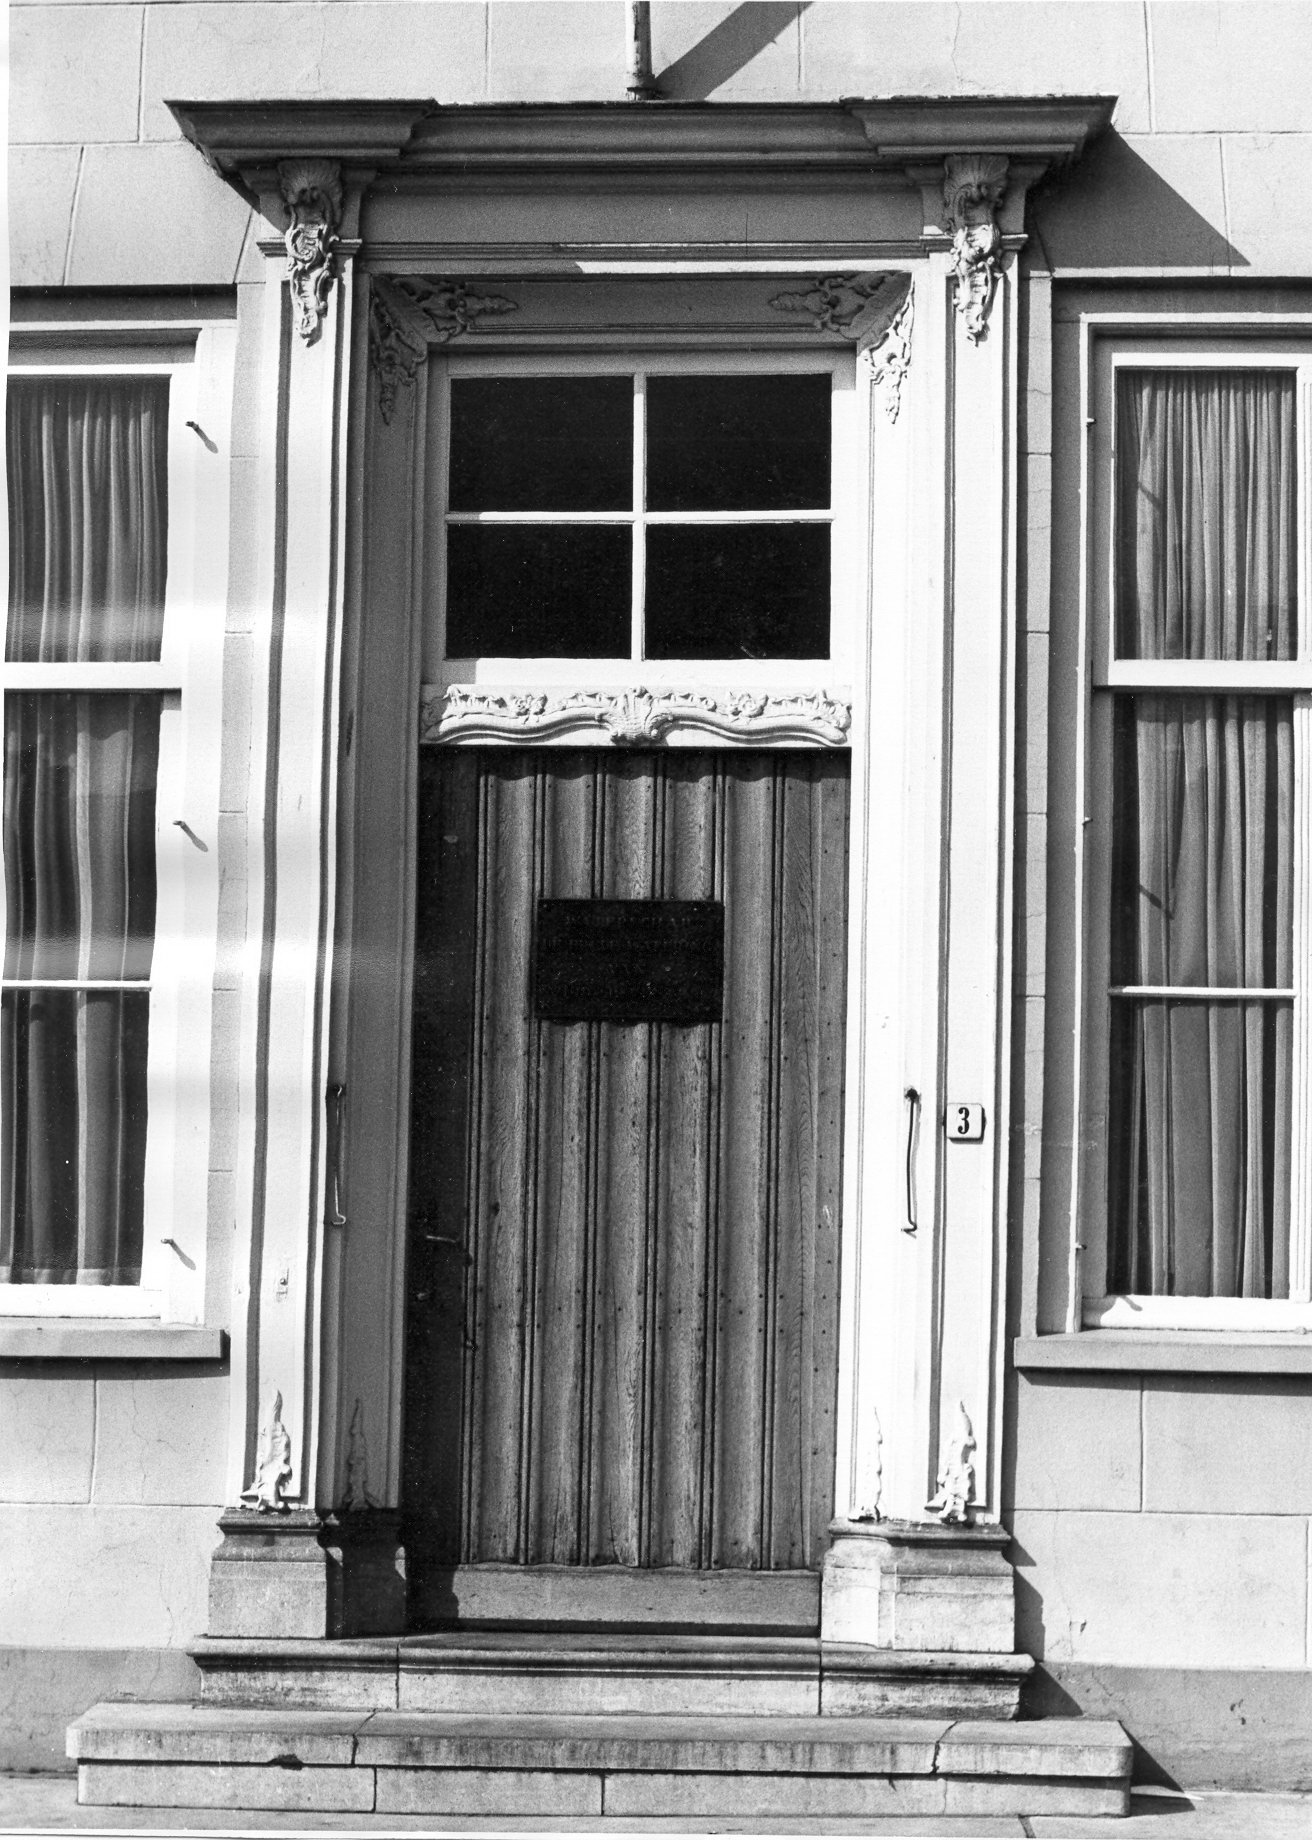 De ingang van de herberg, later hotel, De Zoutkeet, Grote Markt 1-3 te Goes, ca. 1970.